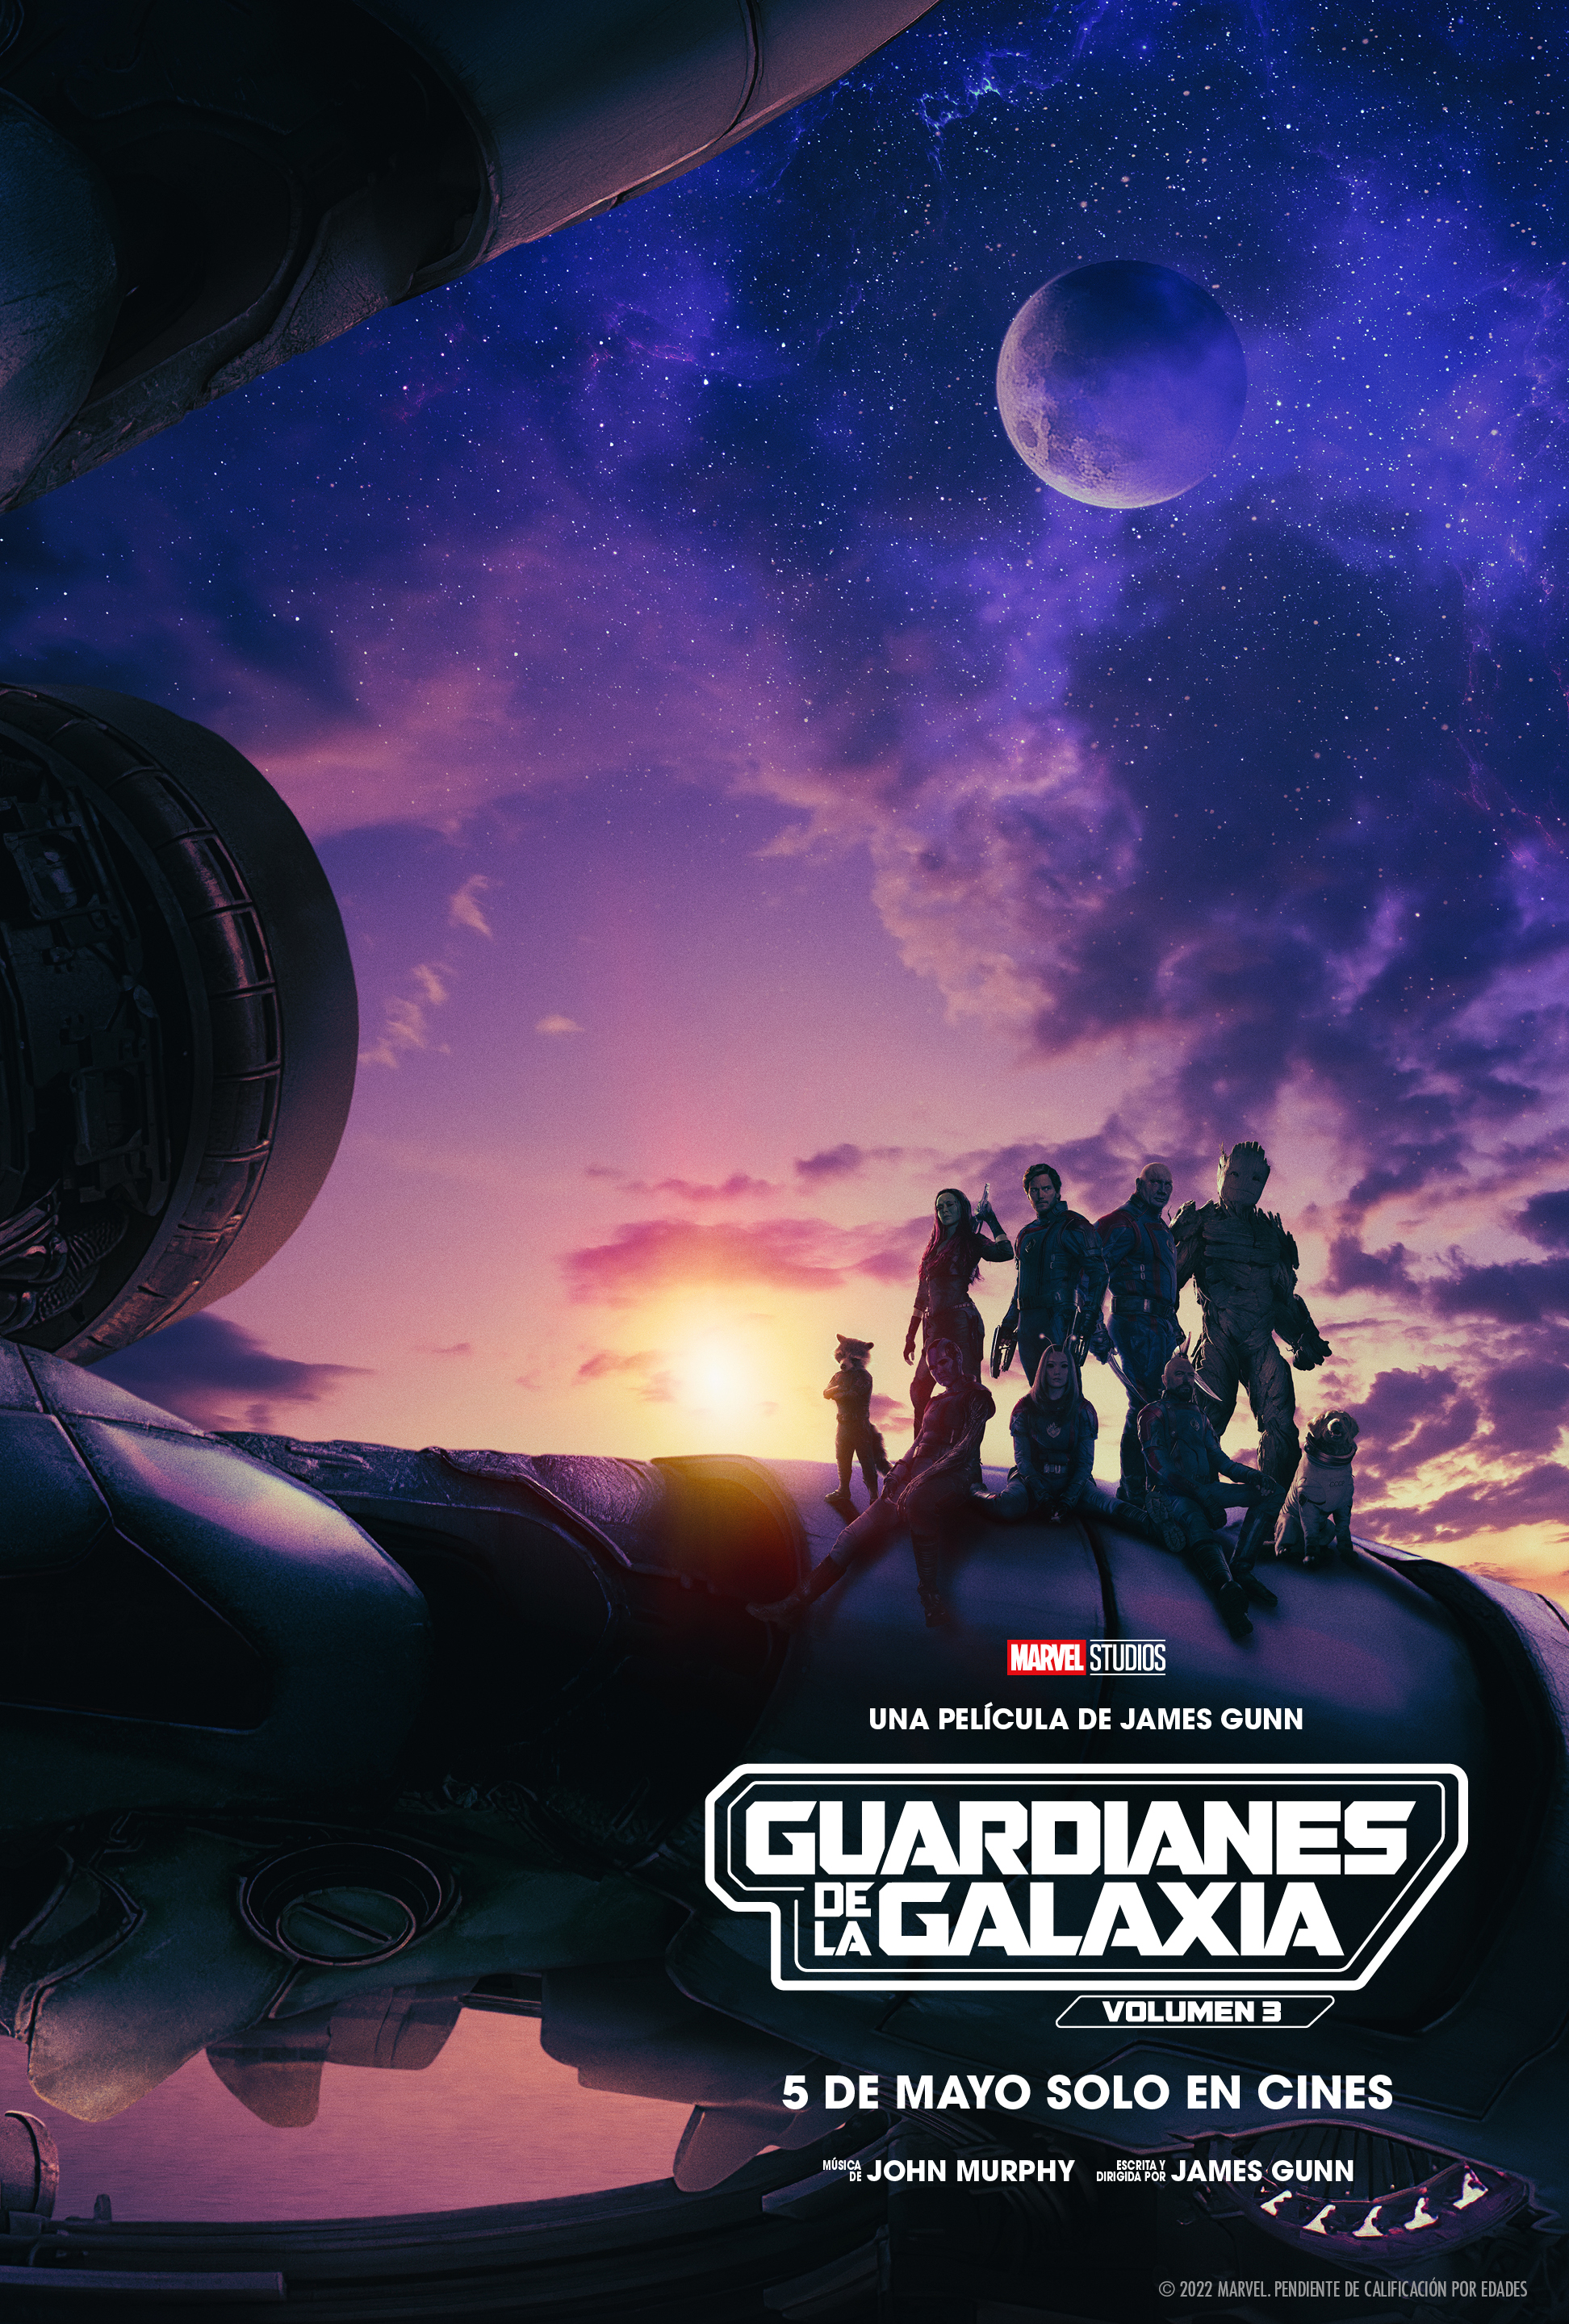 Marvel España on X: 'Guardianes de la Galaxia: Volumen 3' de